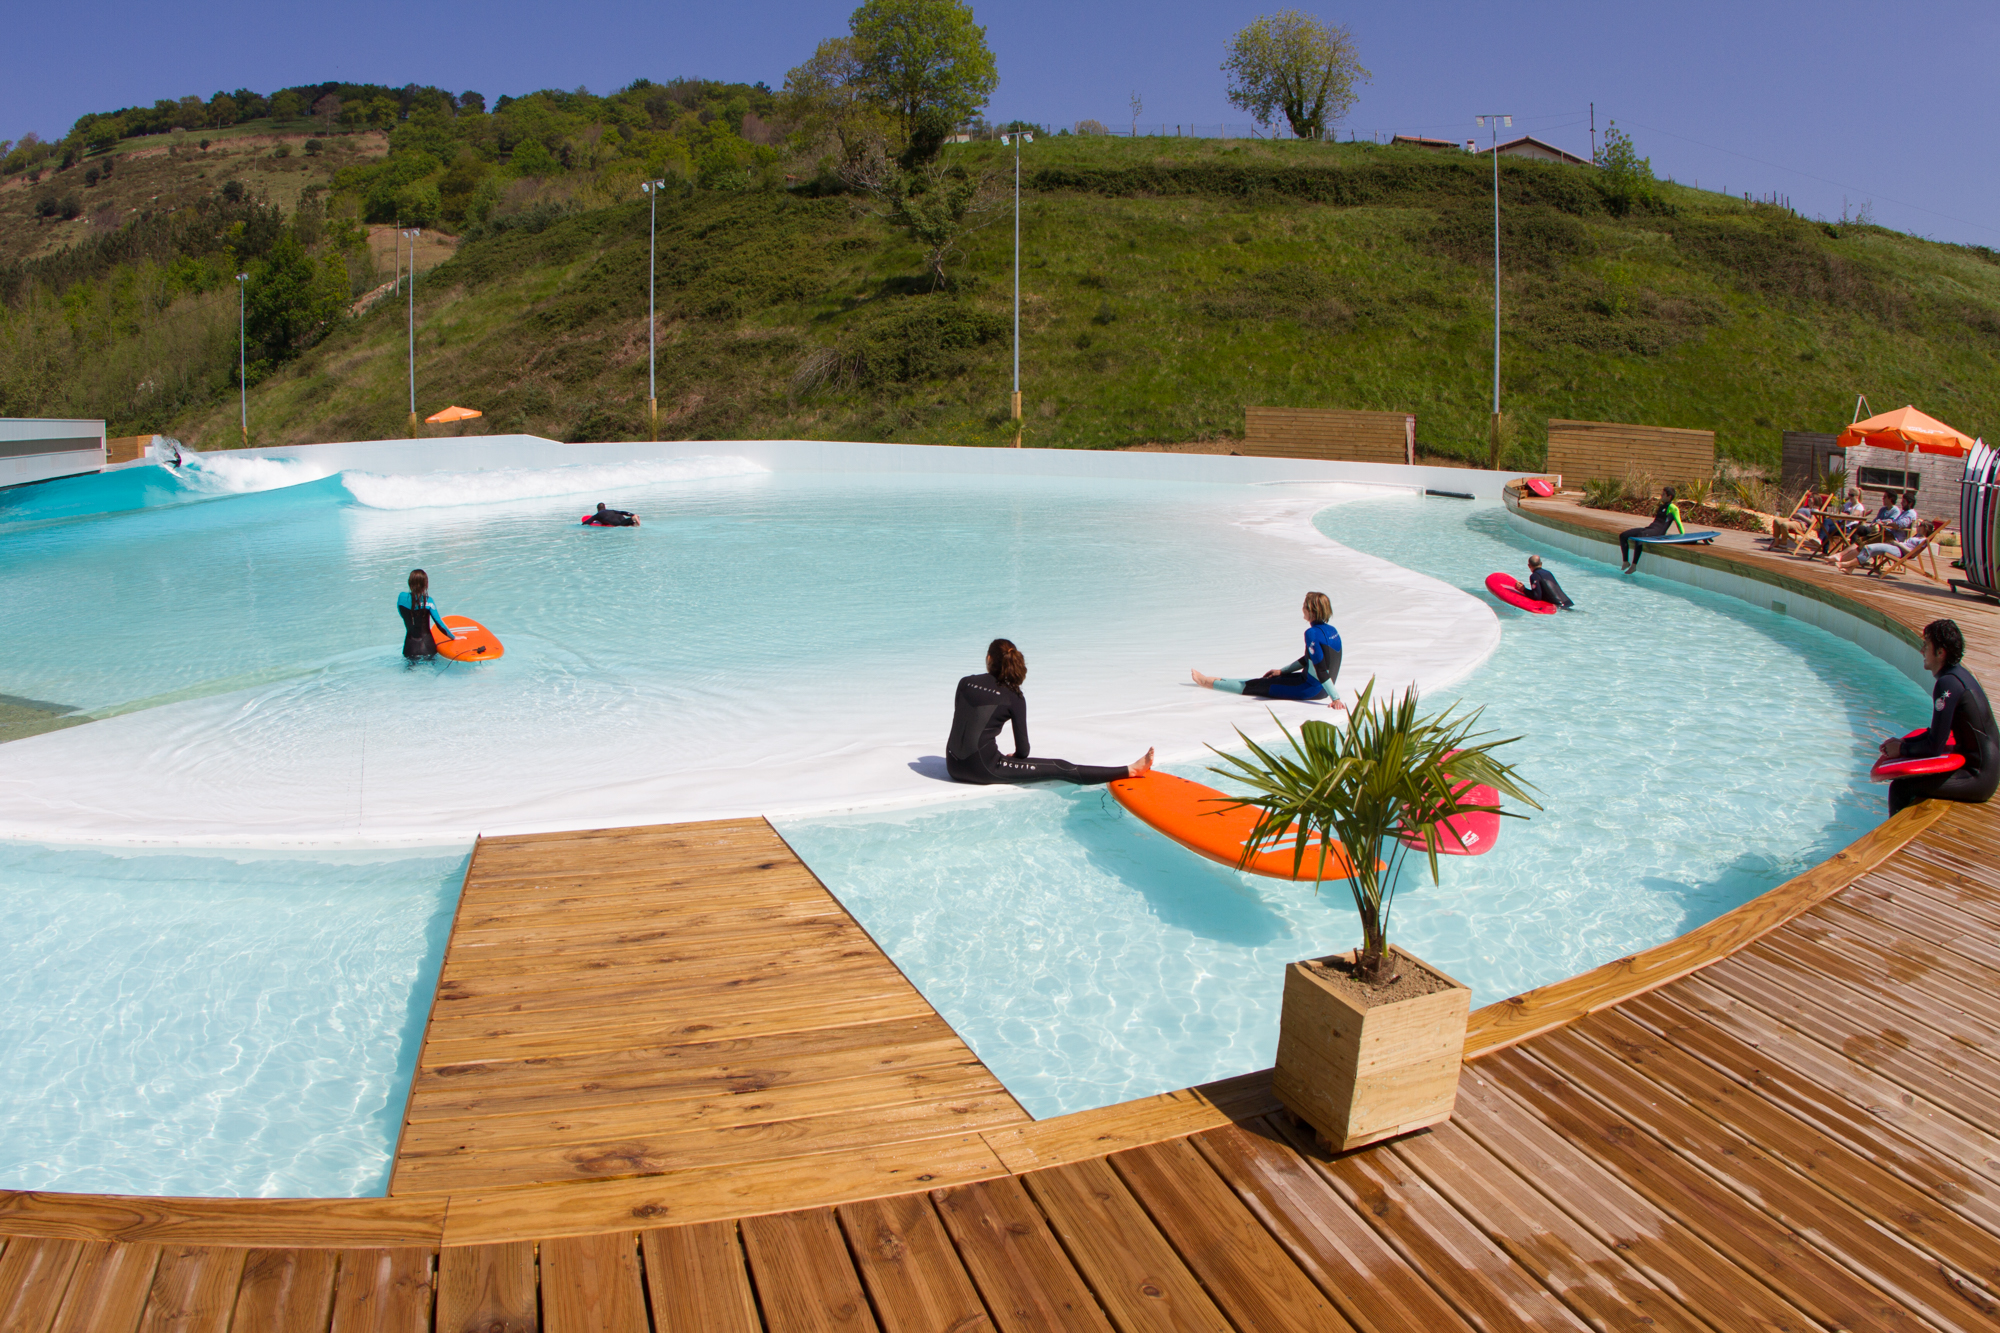 Une piscine à vagues sous forme de lagoon